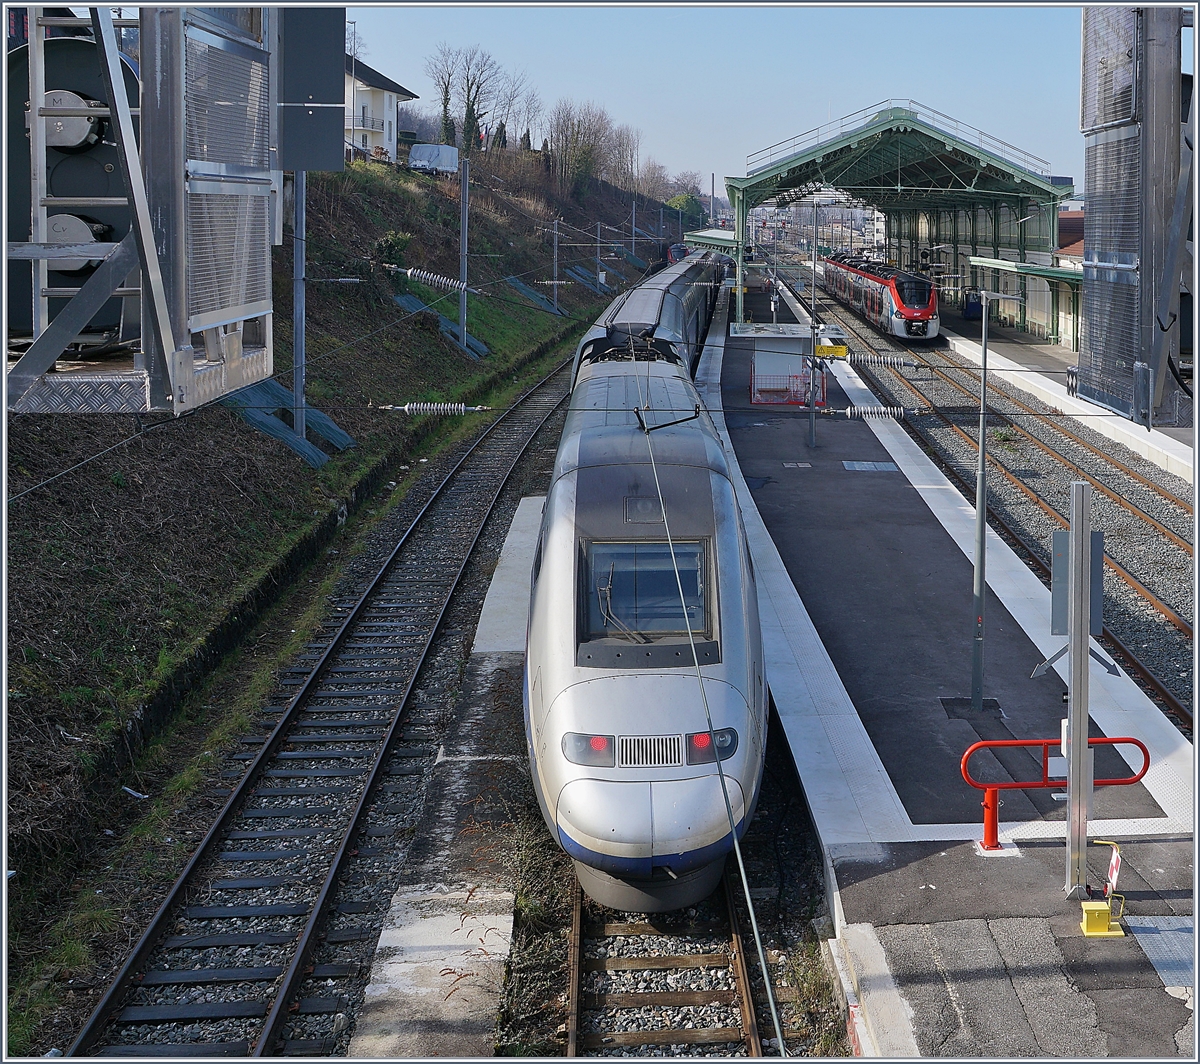 In der Saison im Winter und Sommer verkehren an Wochenenden direkte TGV Züge von Paris nach Evian, ein solcher ist hier nach seiner Ankunft in Evian zu sehen. 

8. Feb. 2020